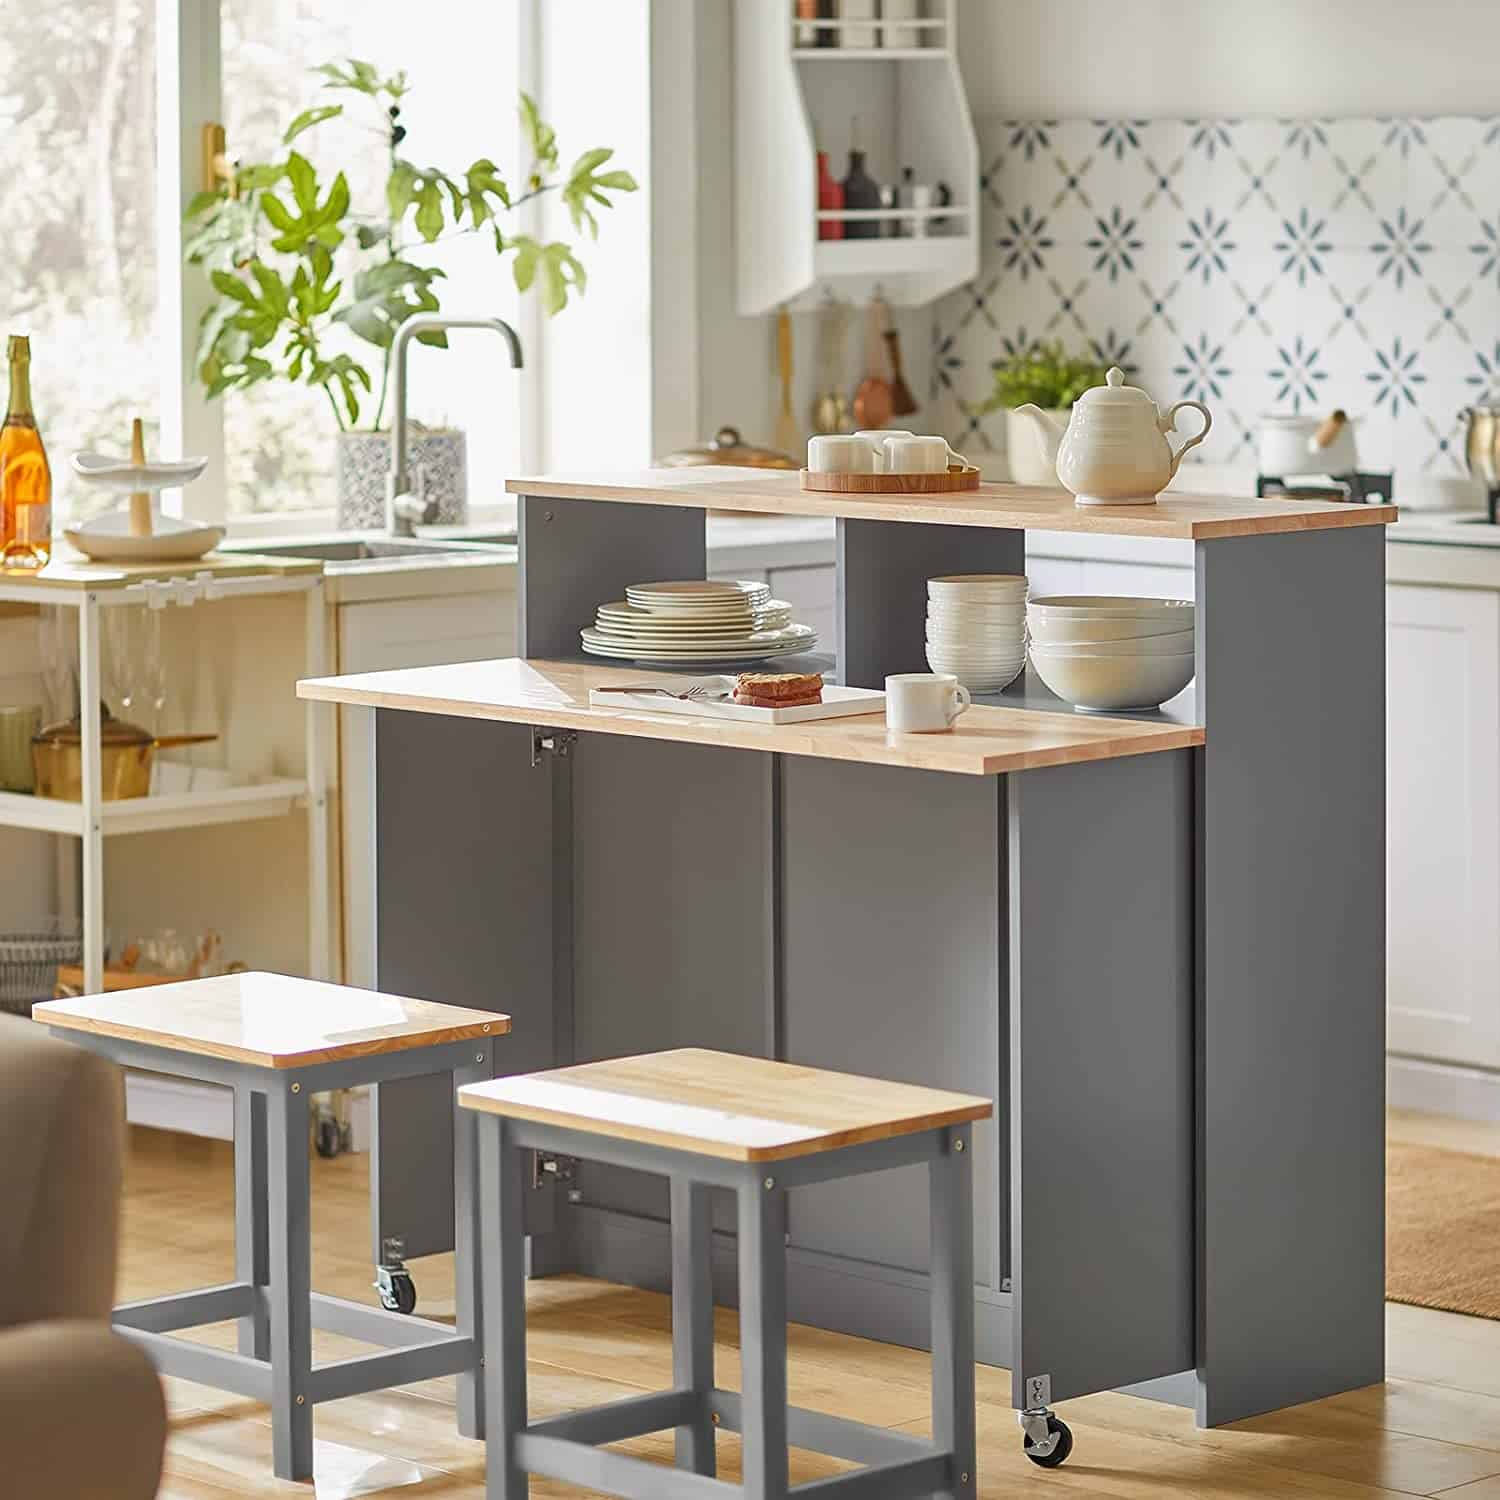 Køkkenø / med skydelåger, udklappelig bordplade, køkkenskab, lys grå, 110 x 97 x 68 cm - Køkkenø